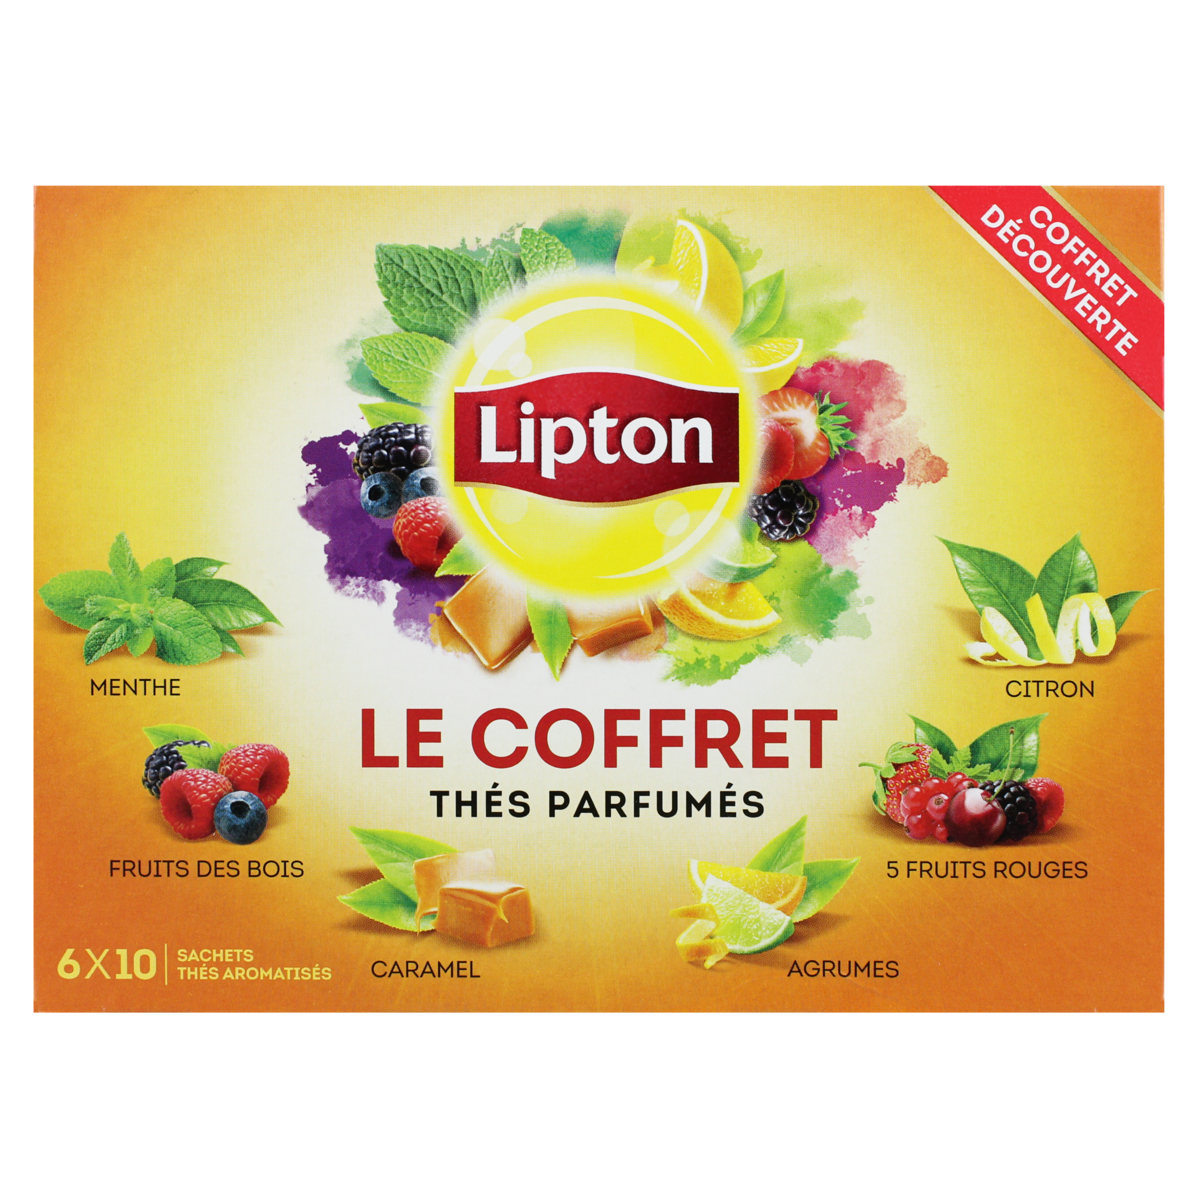 LIPTON Coffret thés parfumés 6 parfums 6x6 sachets 96g